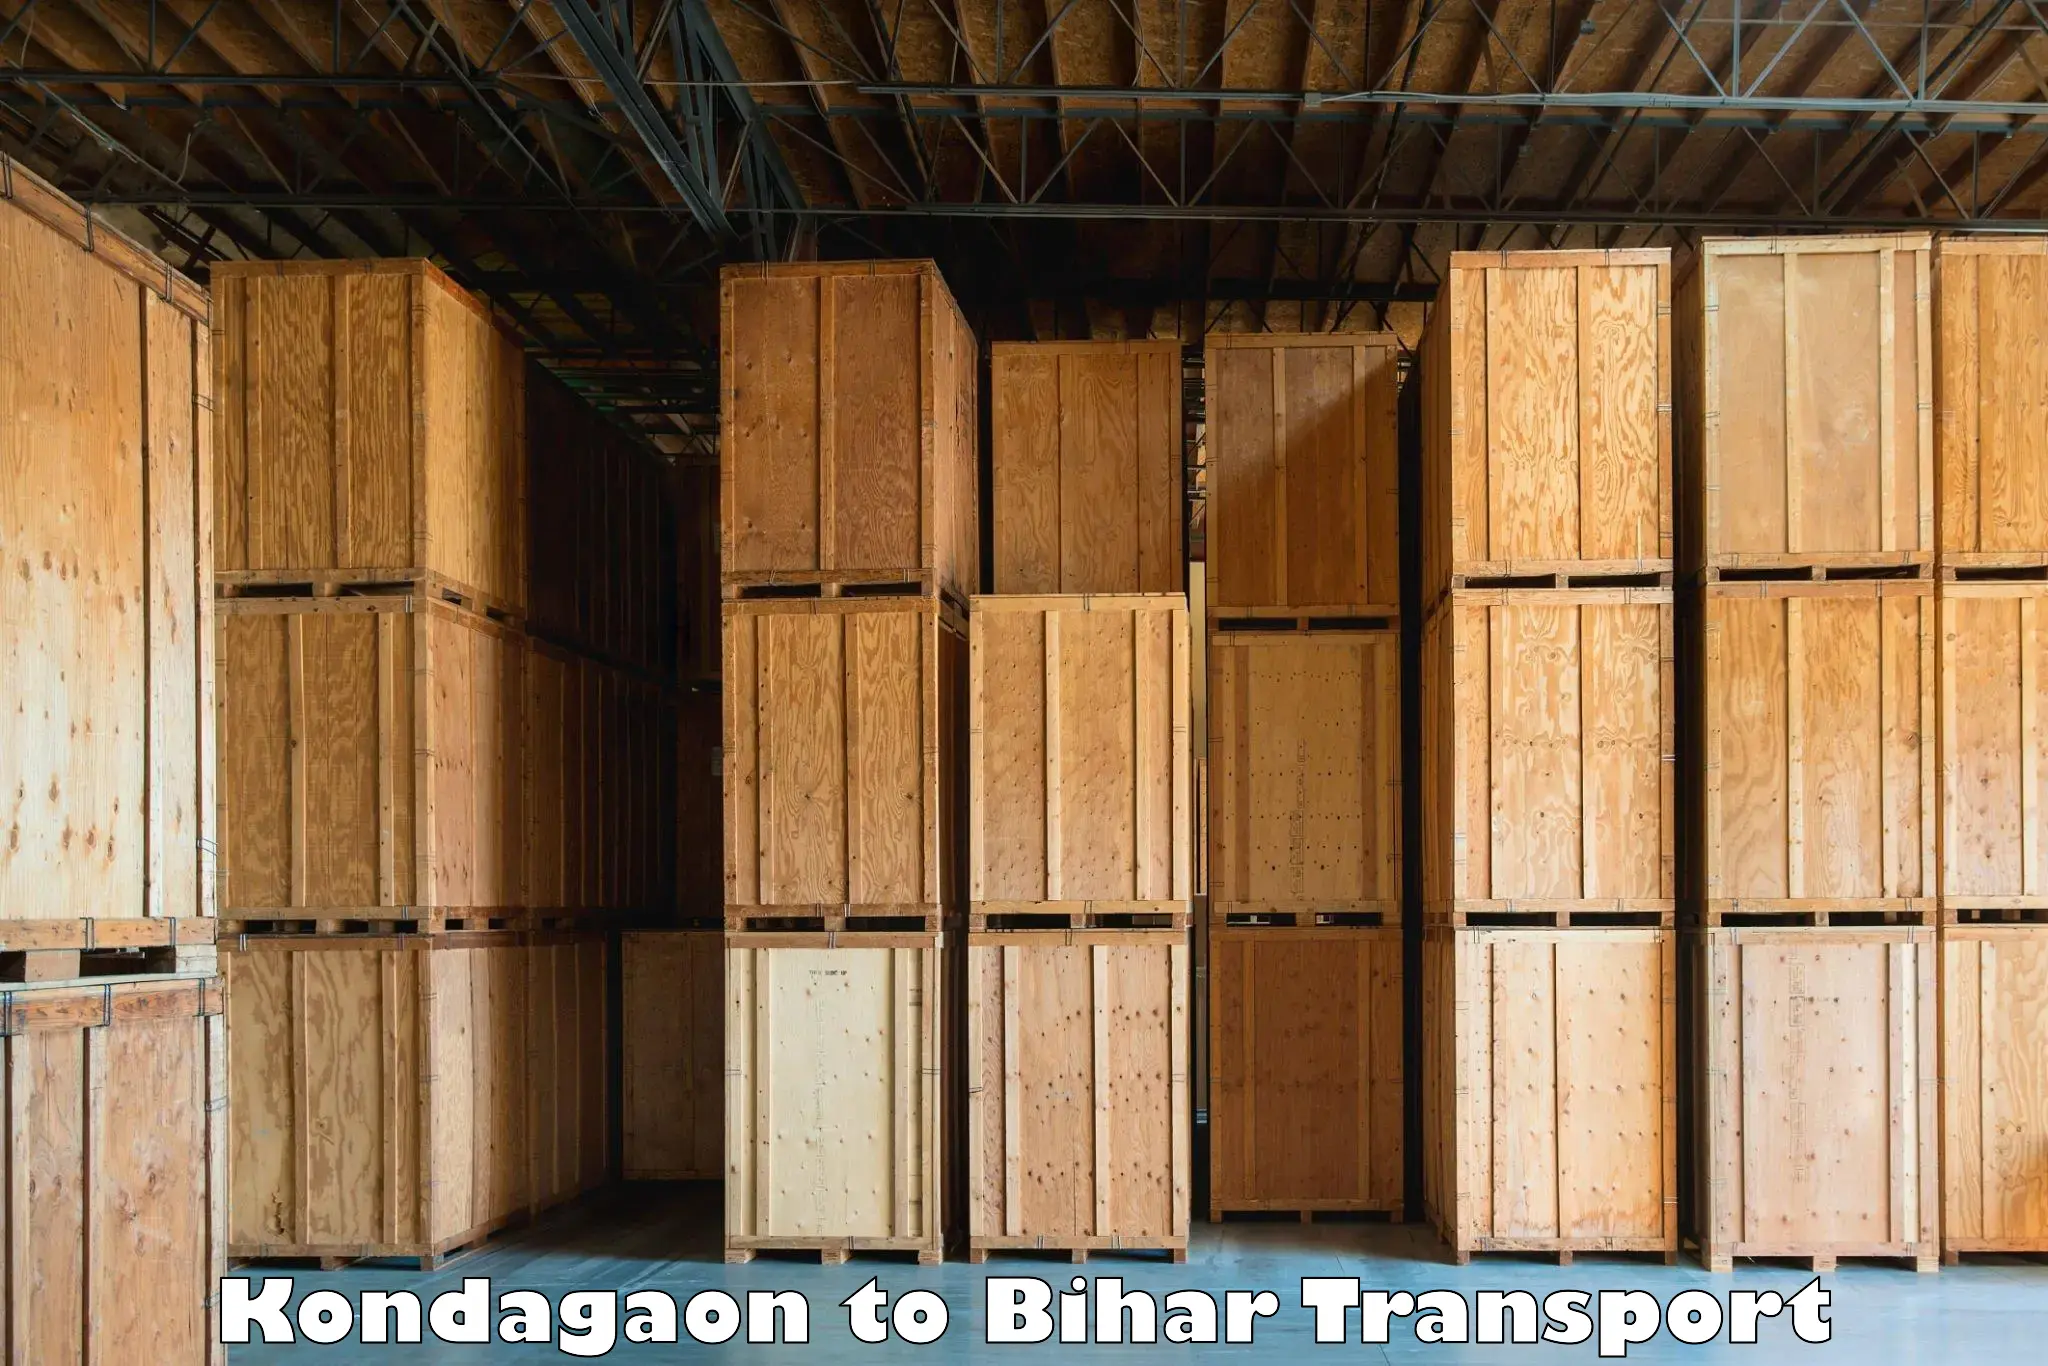 Transport in sharing Kondagaon to Bankipore